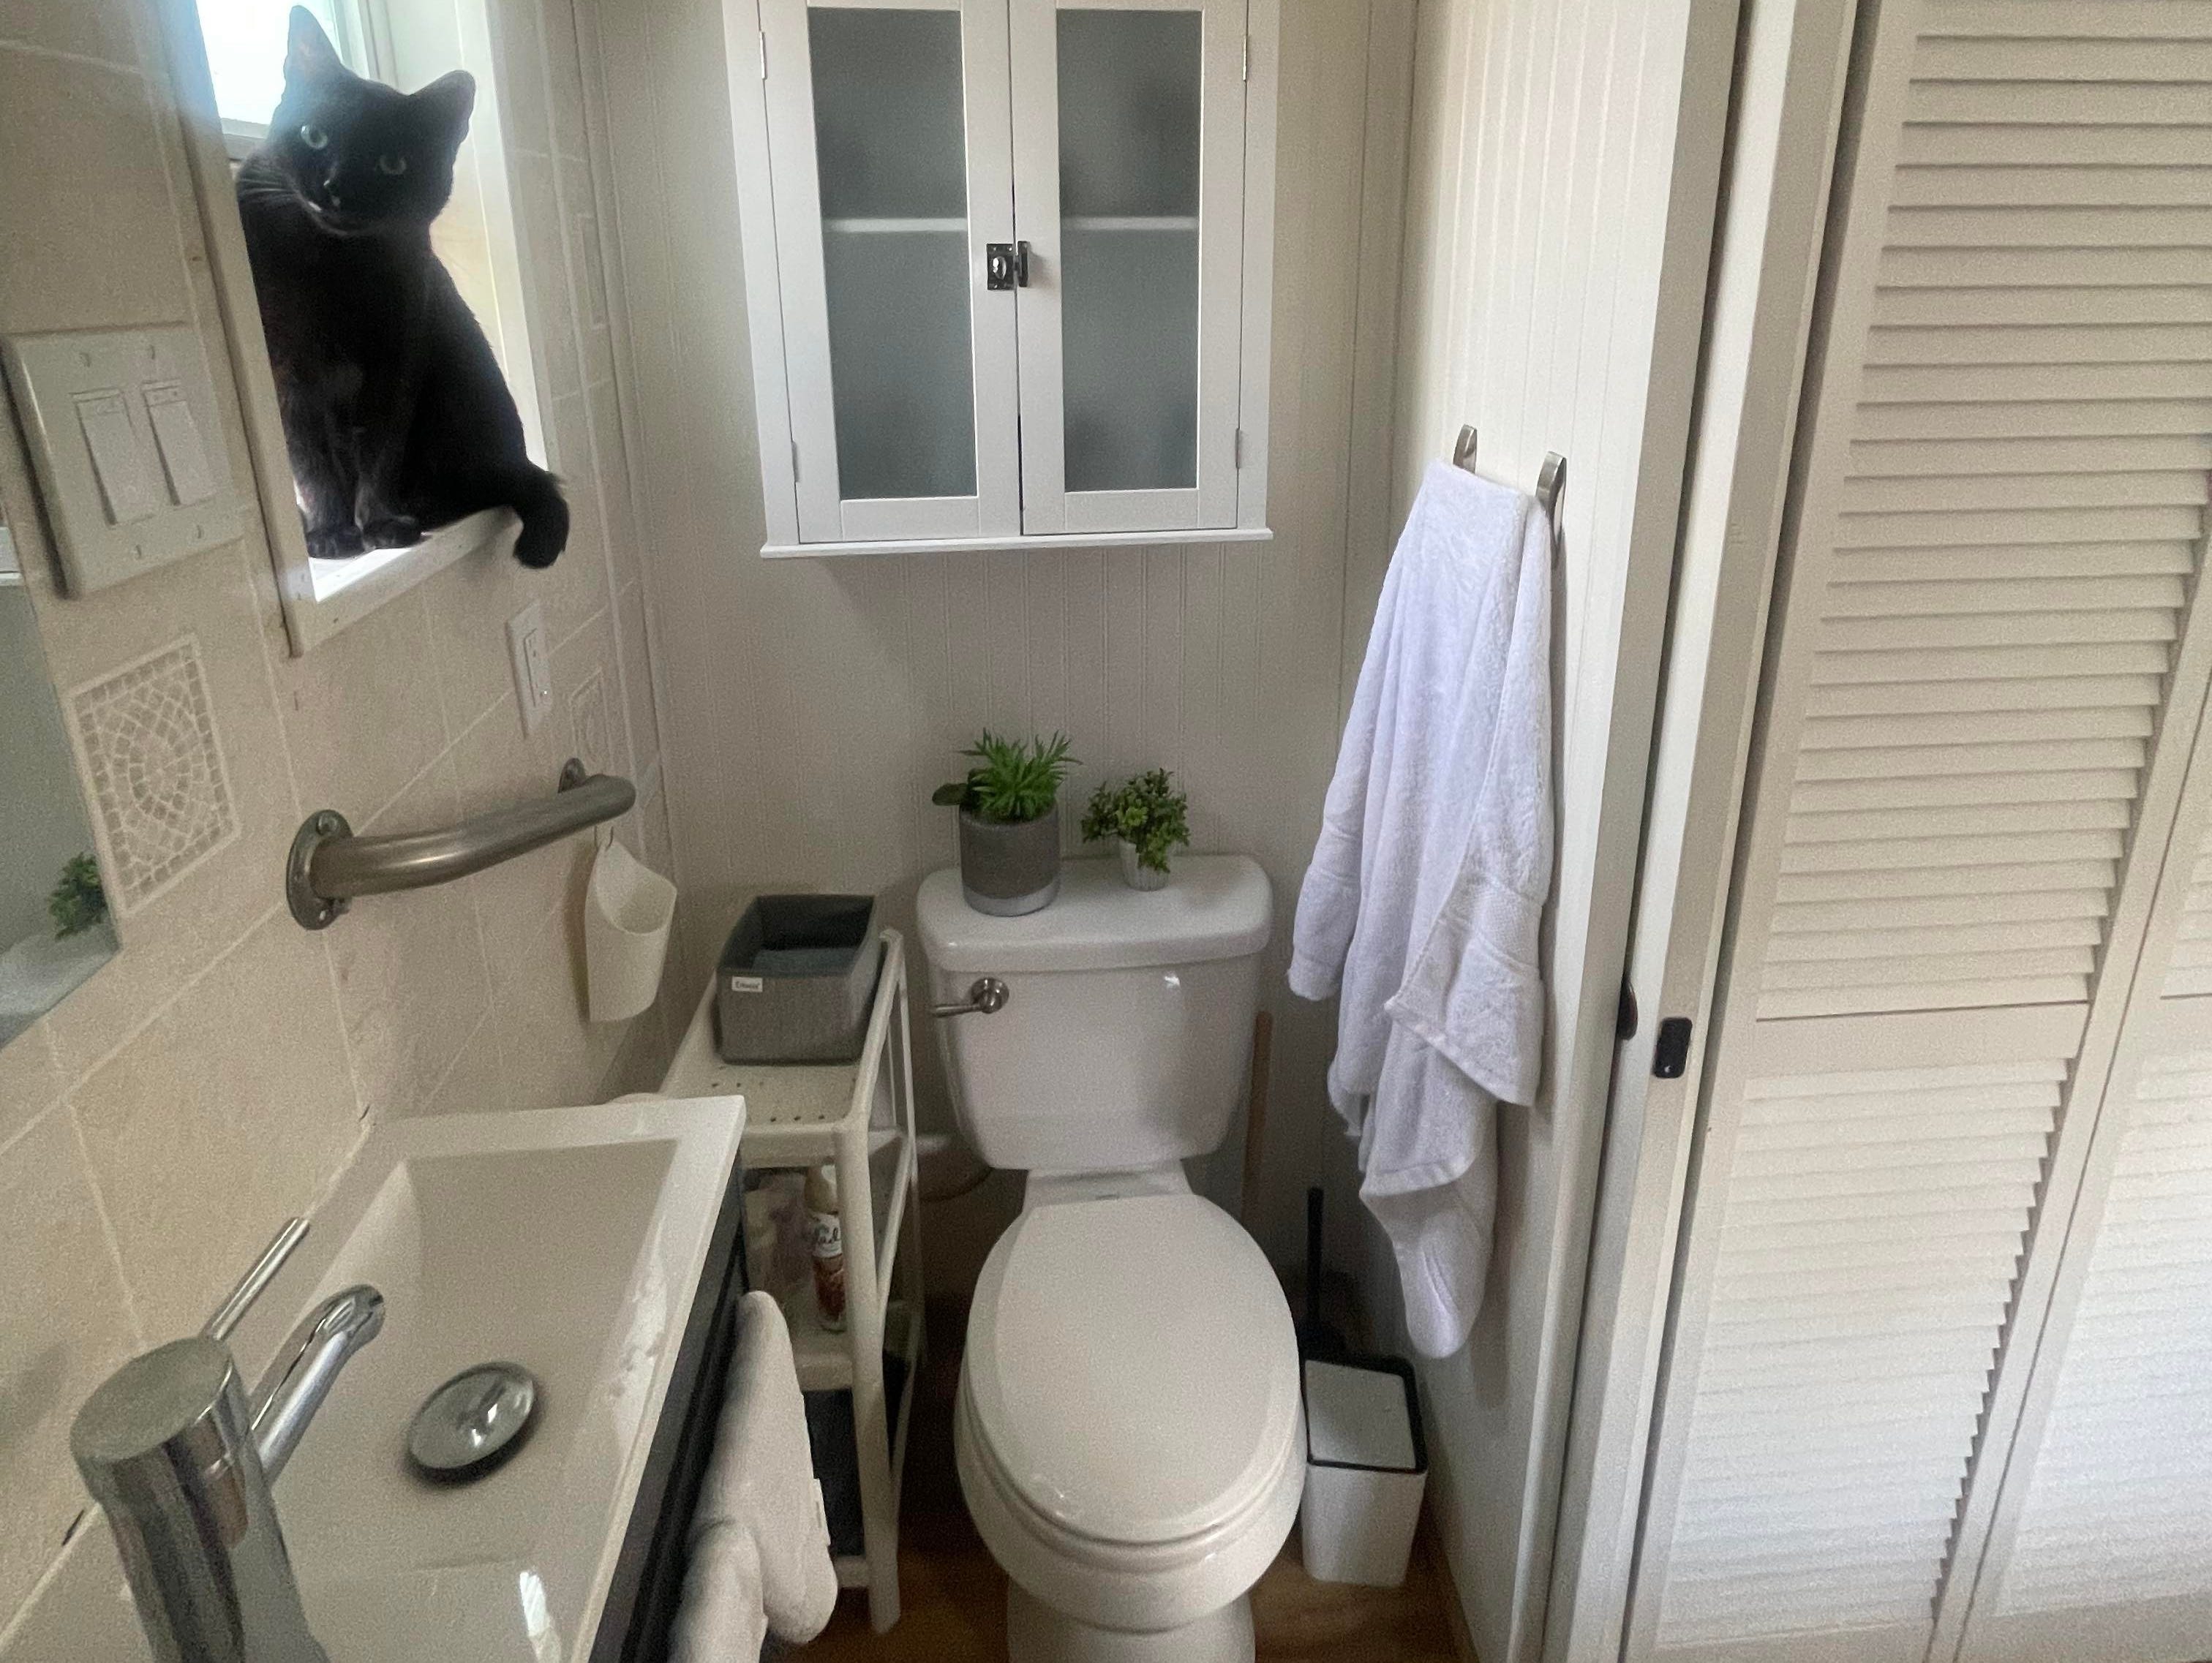 Ein Badezimmer mit weißen Fliesenwänden, einem Hartholzboden und einer schwarzen Katze, die auf der Fensterbank sitzt.